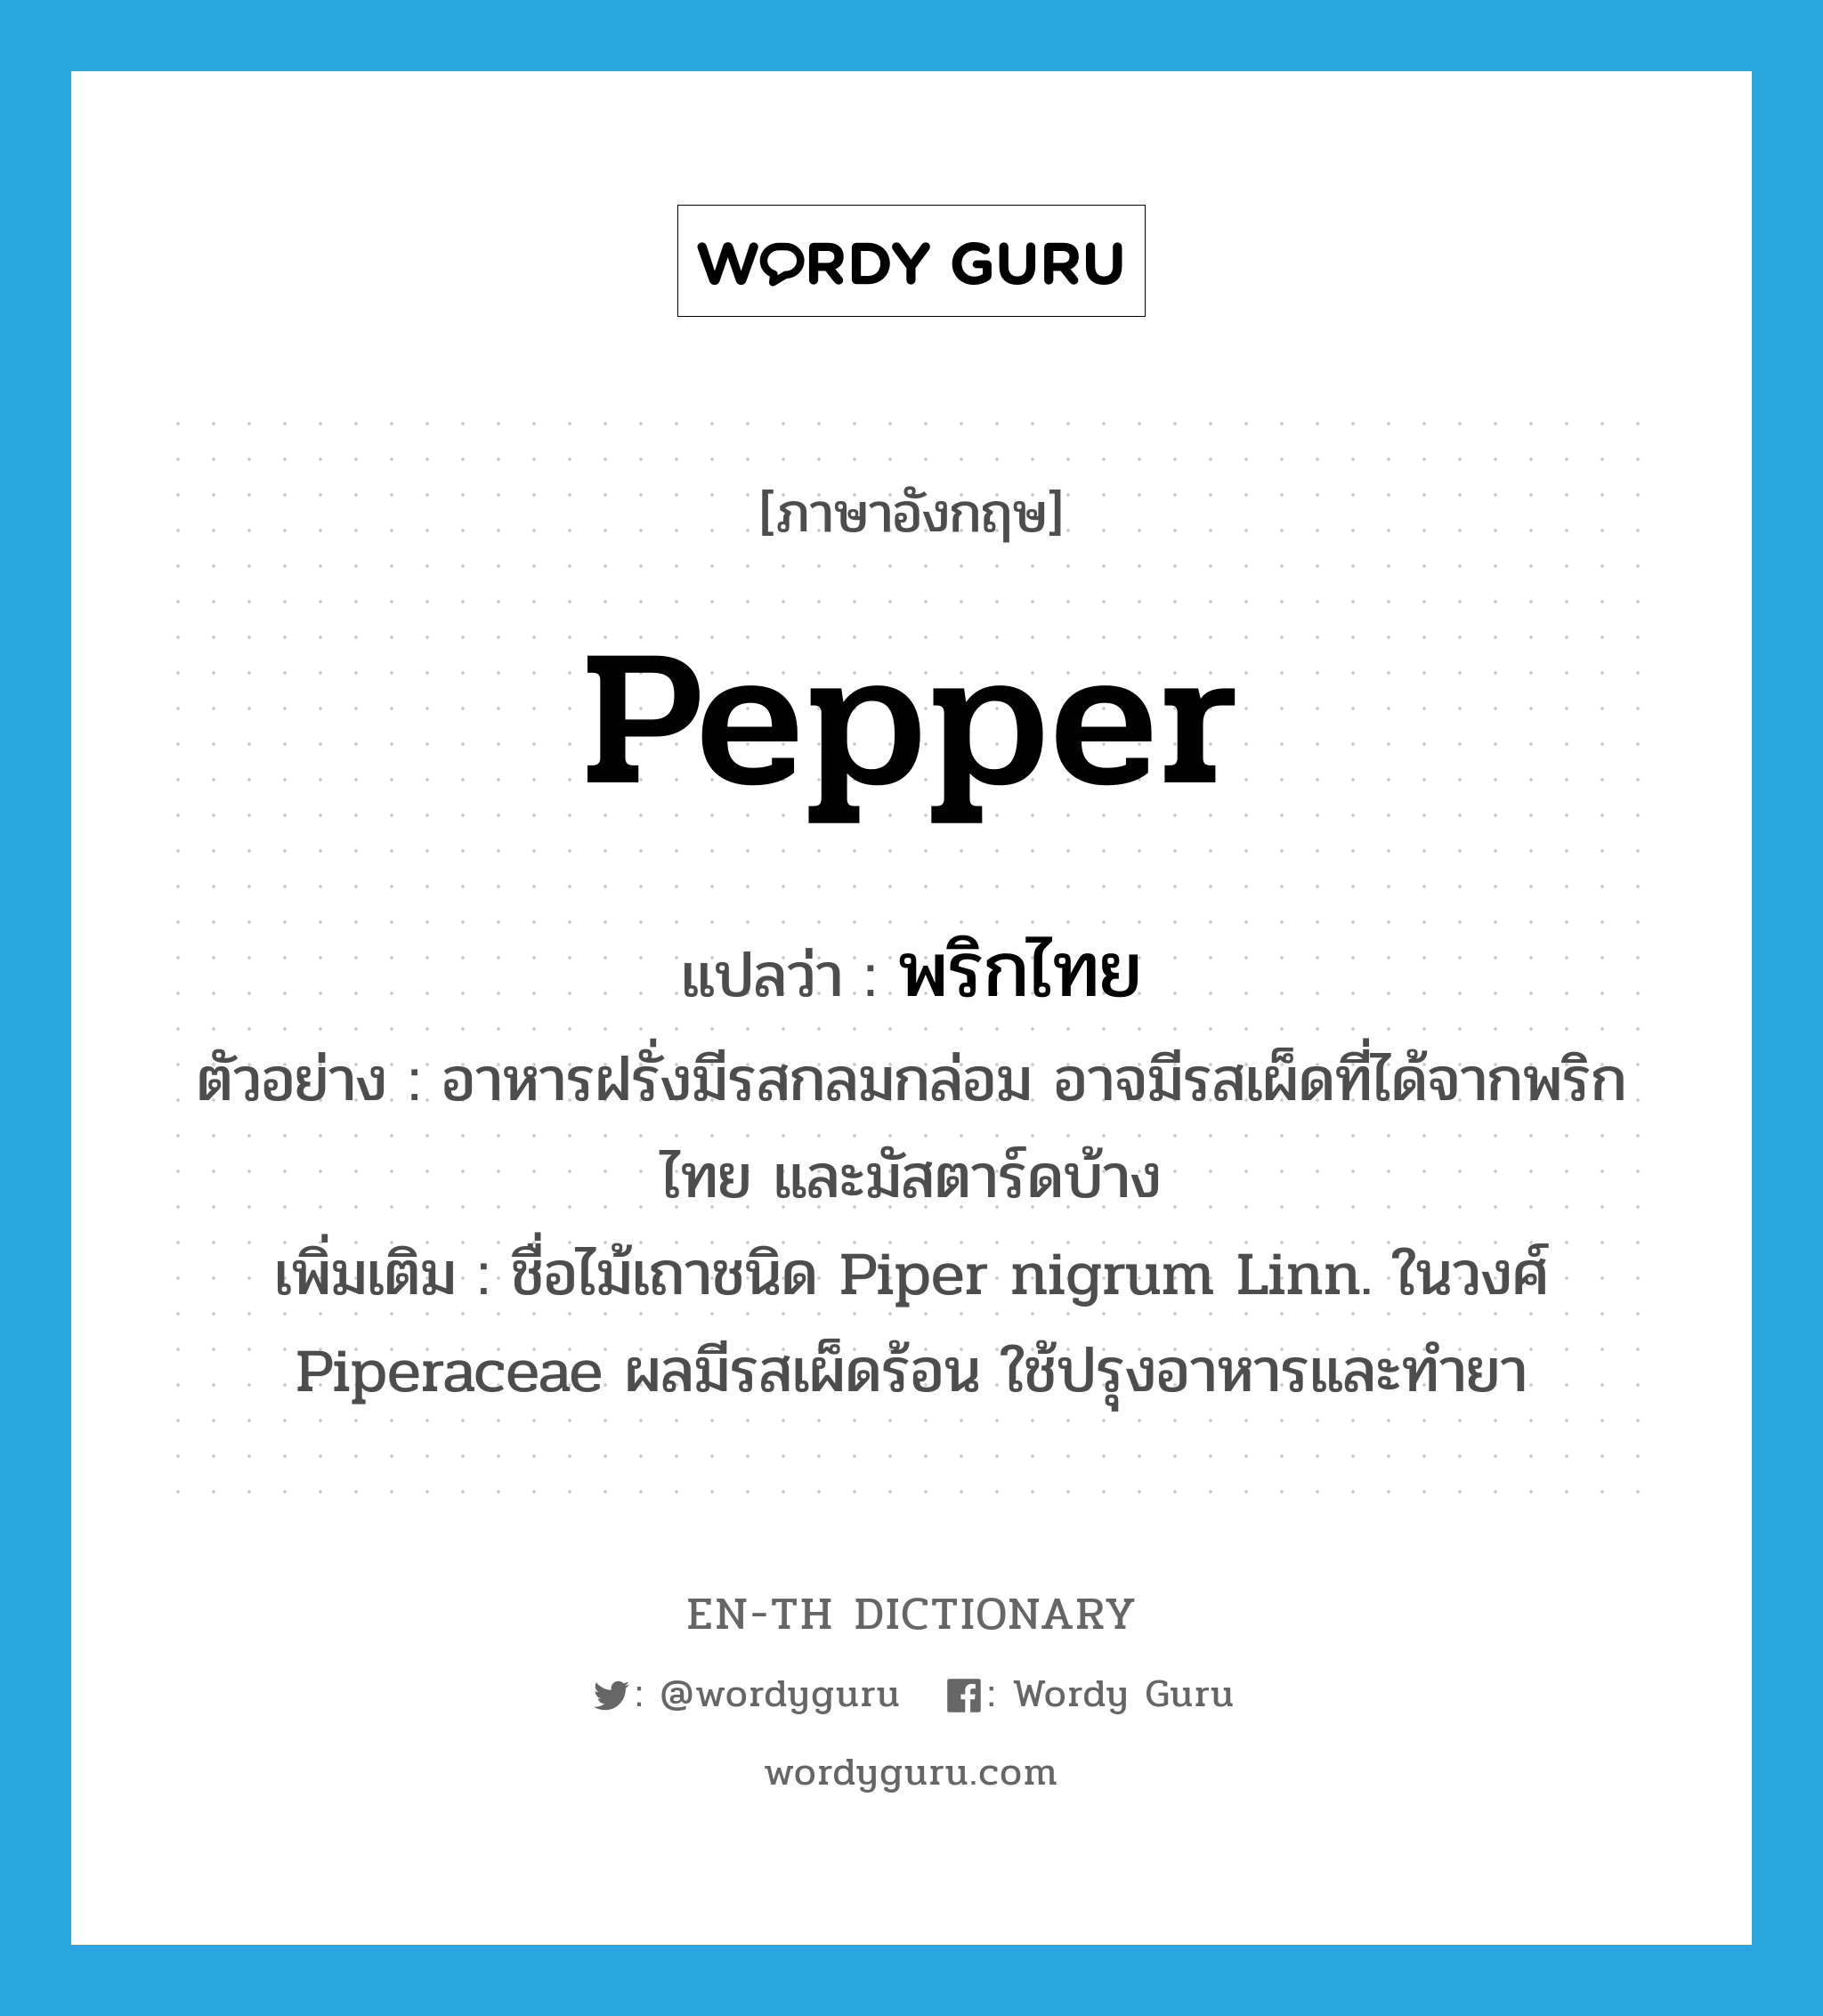 pepper แปลว่า?, คำศัพท์ภาษาอังกฤษ pepper แปลว่า พริกไทย ประเภท N ตัวอย่าง อาหารฝรั่งมีรสกลมกล่อม อาจมีรสเผ็ดที่ได้จากพริกไทย และมัสตาร์ดบ้าง เพิ่มเติม ชื่อไม้เถาชนิด Piper nigrum Linn. ในวงศ์ Piperaceae ผลมีรสเผ็ดร้อน ใช้ปรุงอาหารและทำยา หมวด N